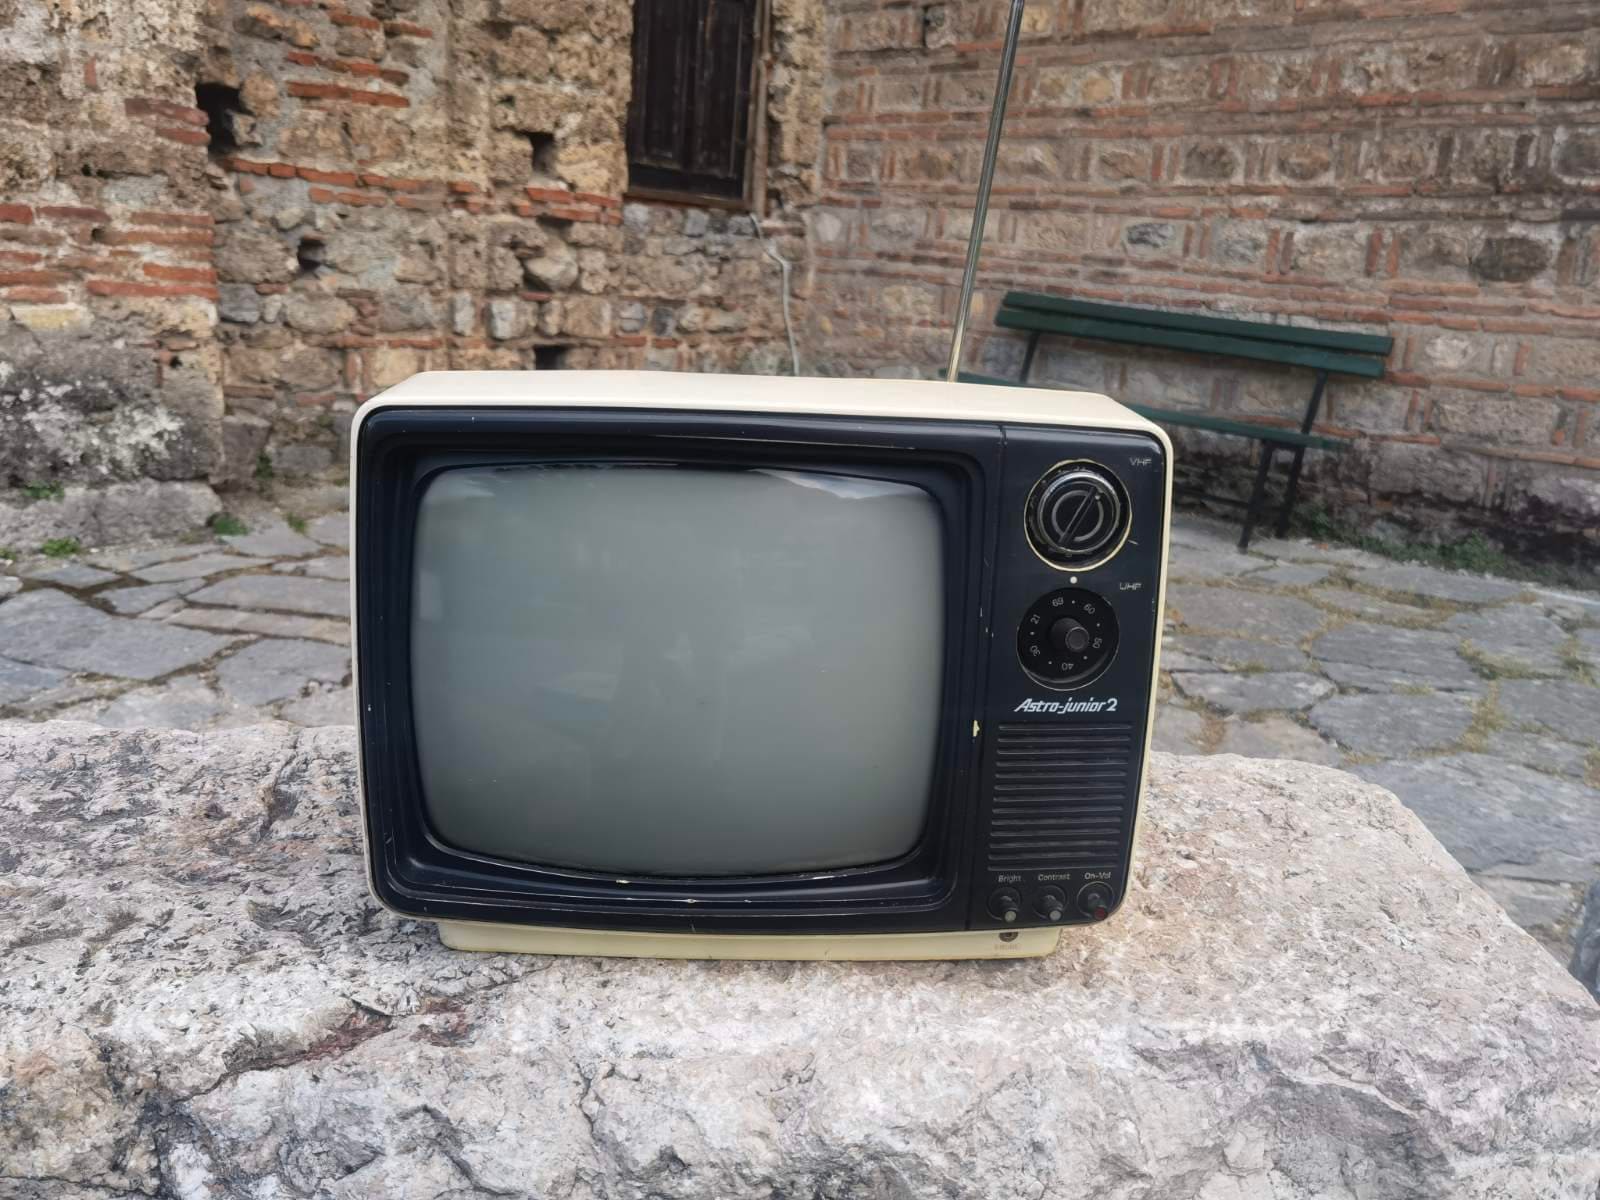 Mini televisor CRT en blanco y negro, Astra junior 2 televisión -   México